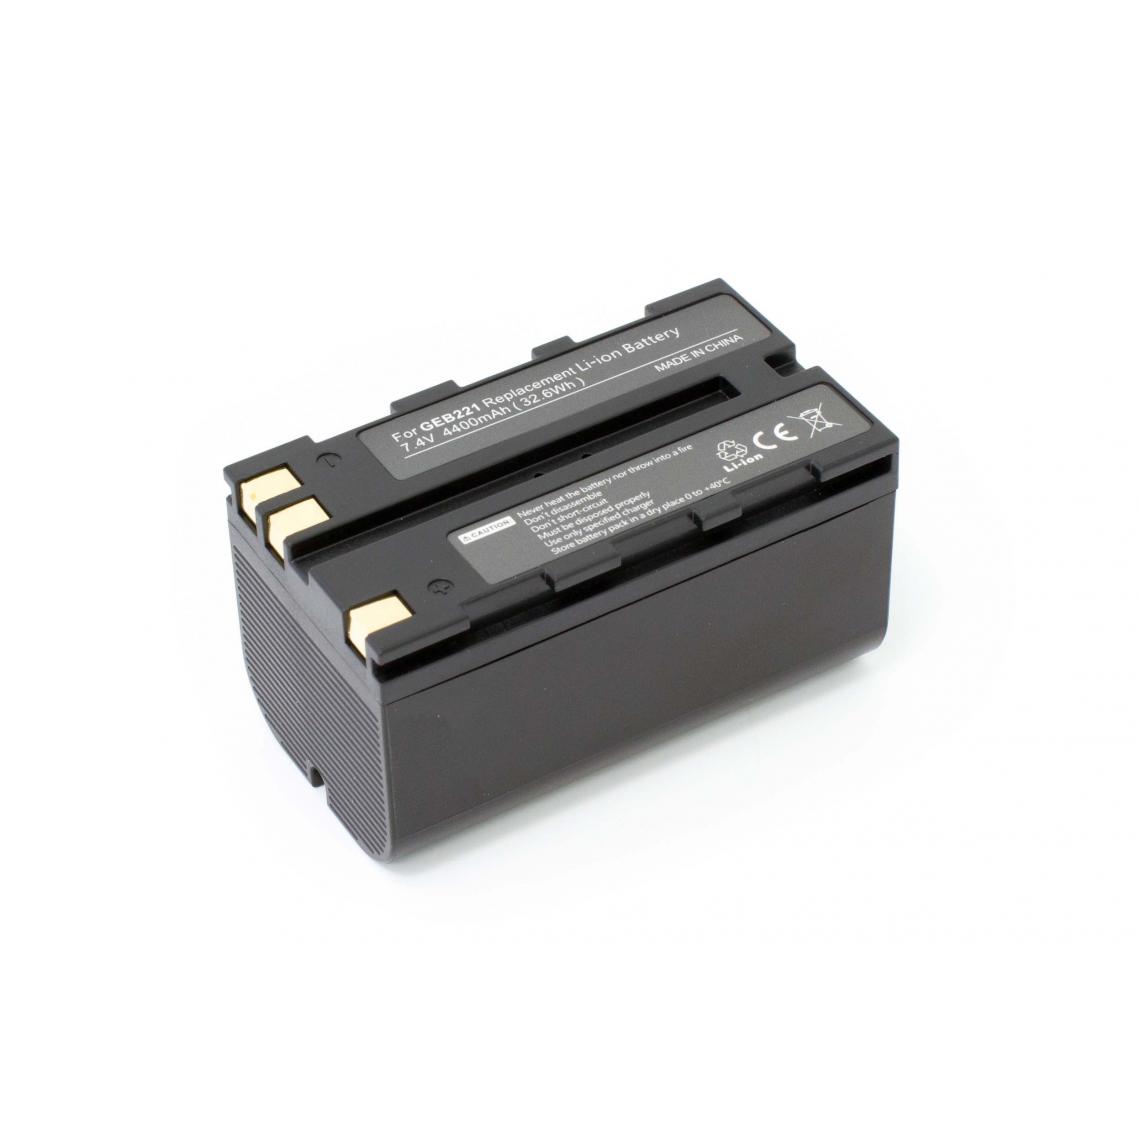 Vhbw - vhbw batterie compatible avec Geomax Zoom 20, 30, 35, 80 appareil photo DSLR (4400mAh, 7,4V, Li-Ion) - Piles rechargeables